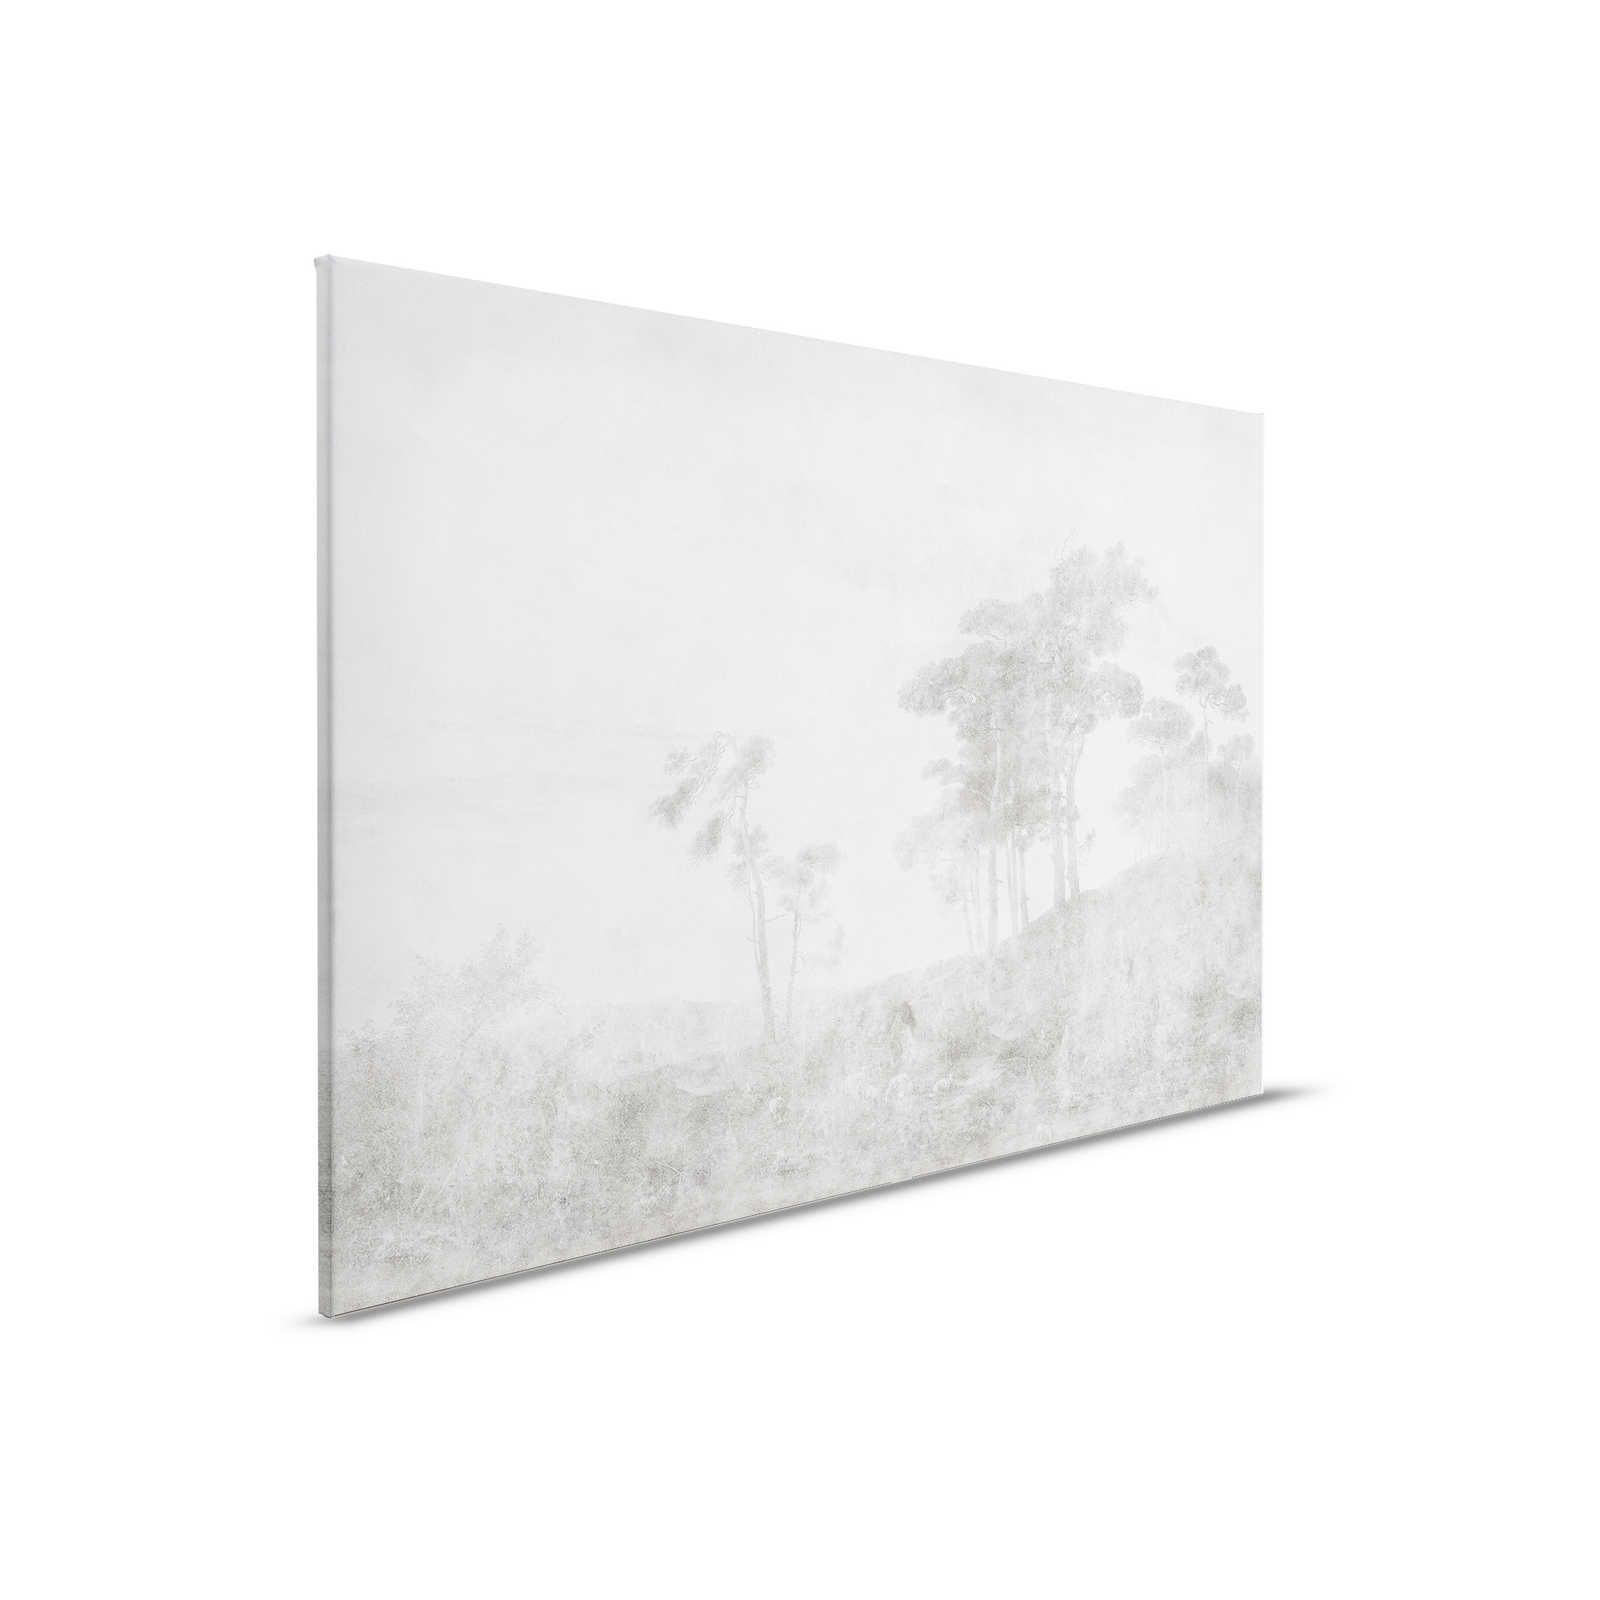 Romantic Grove 2 - toile paysage style peinture vintage - 0,90 m x 0,60 m
